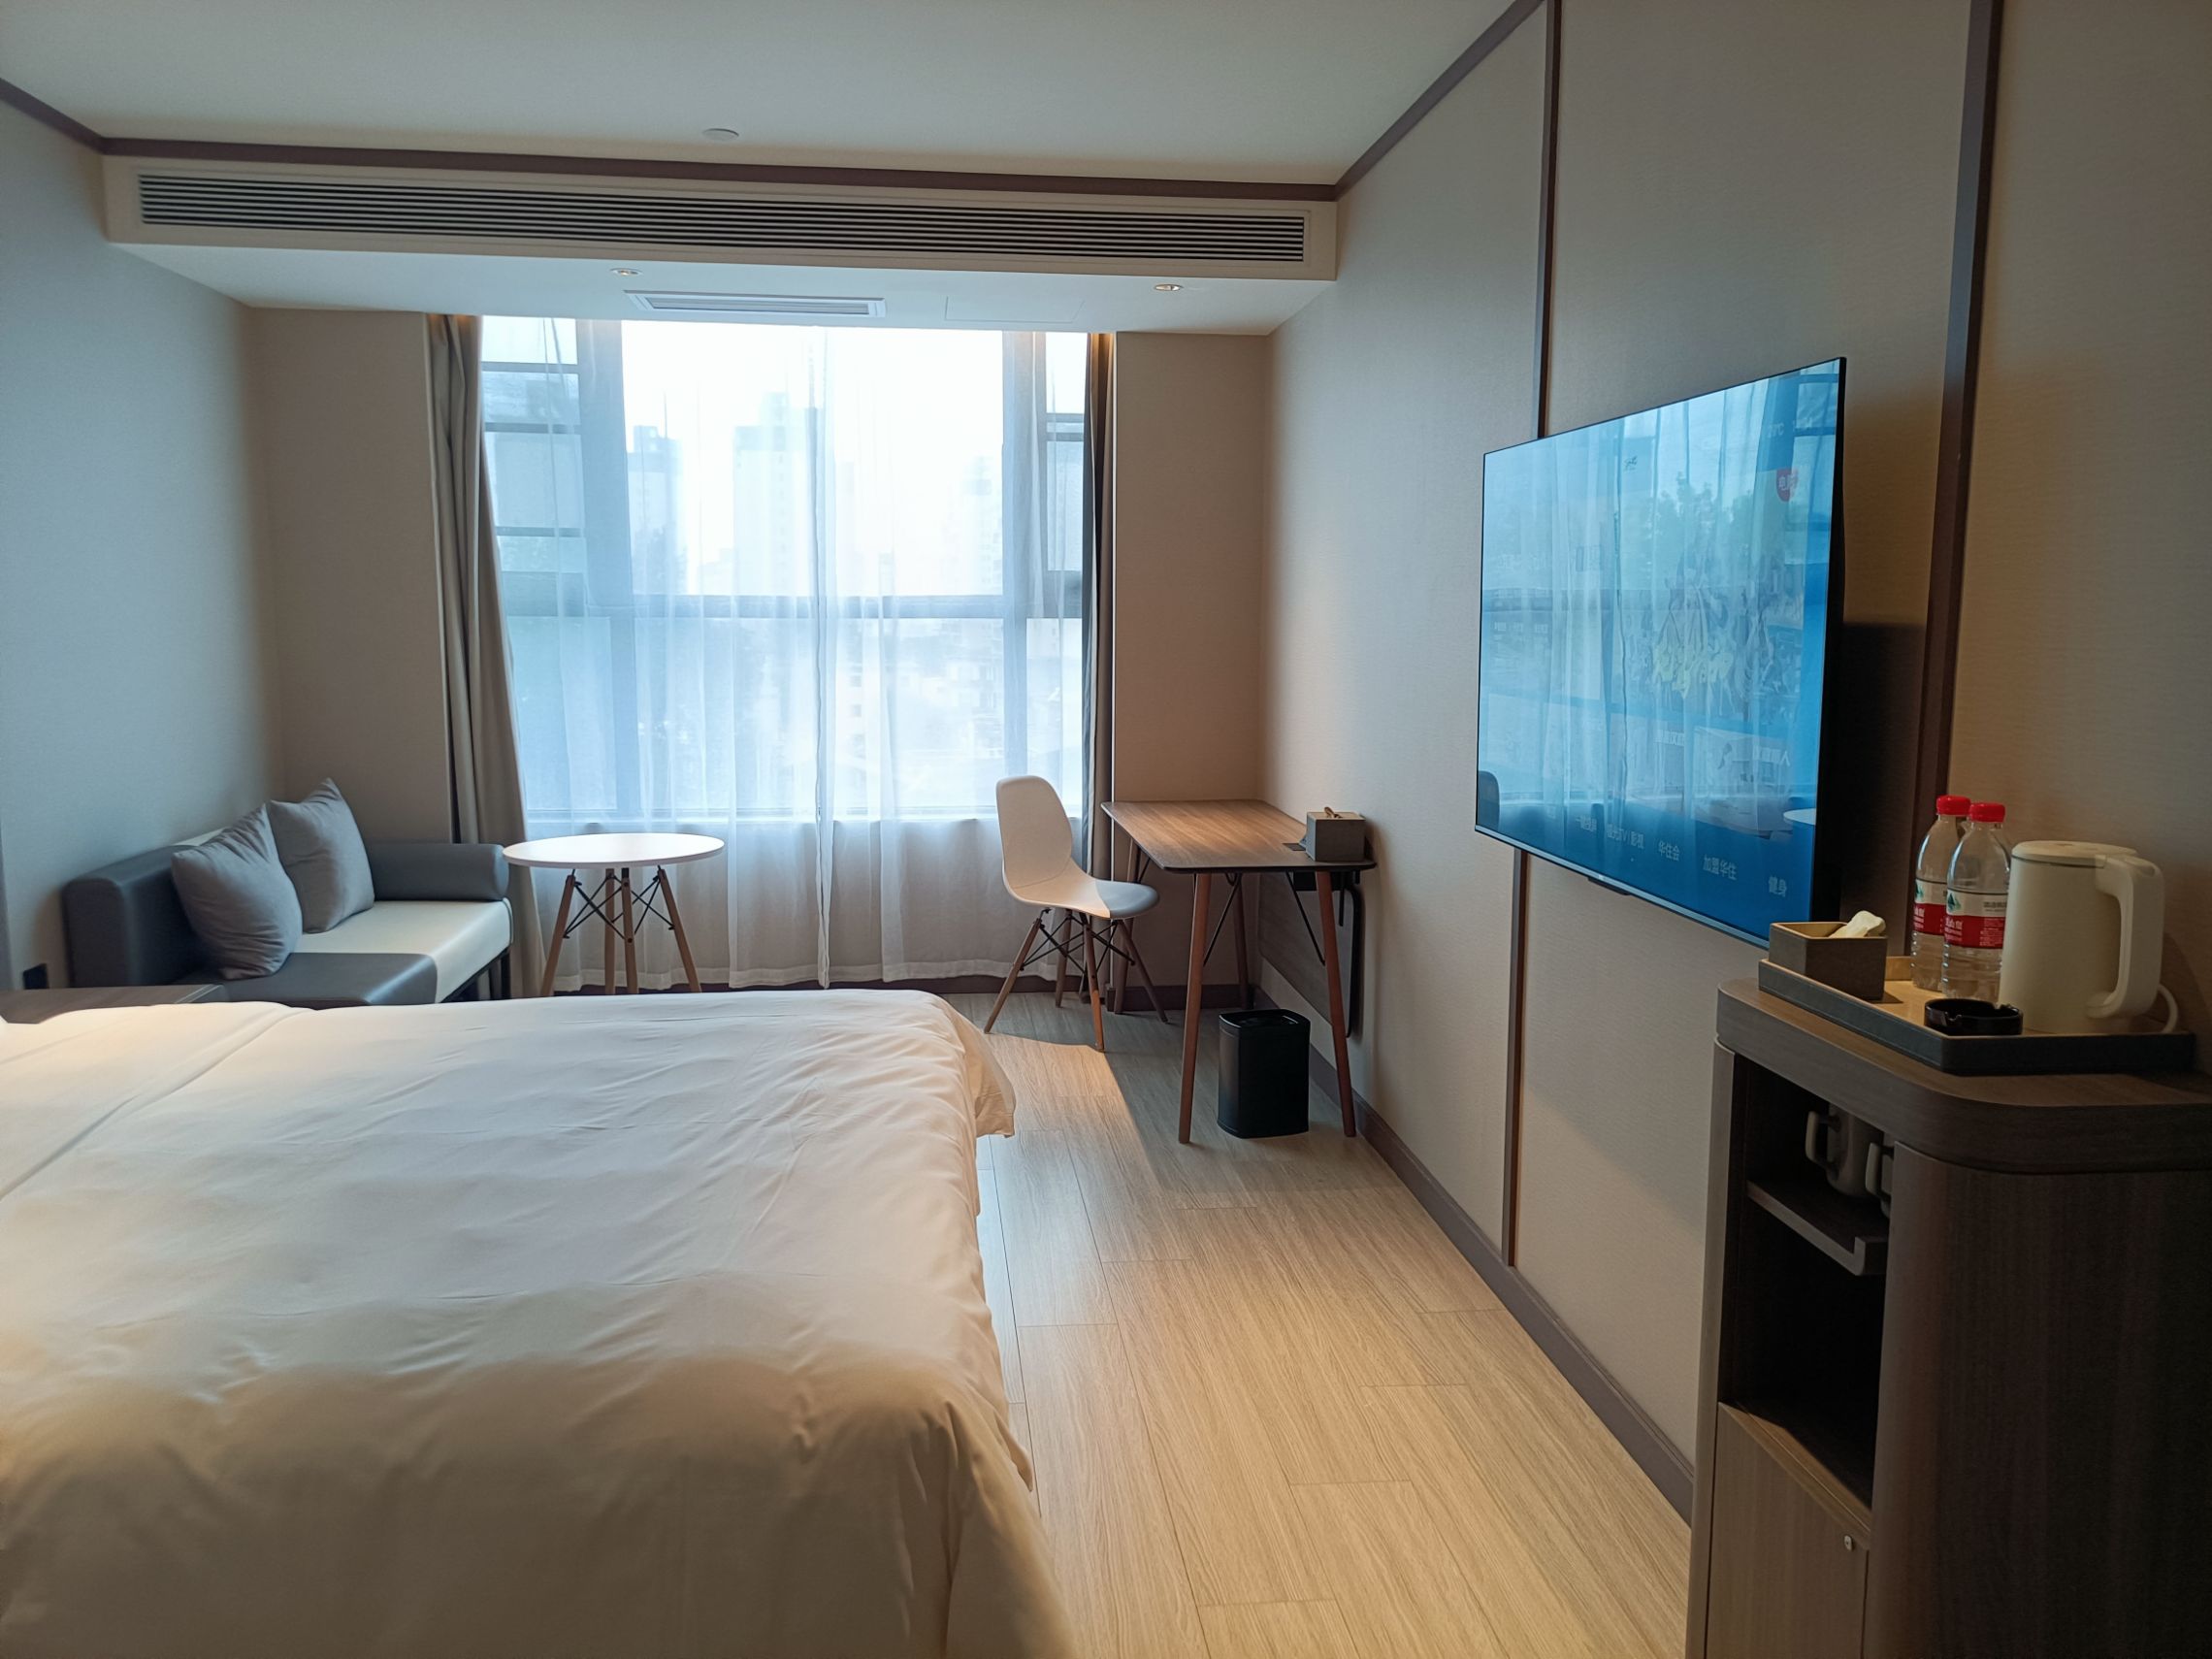 房间新，环境好，非常干净，床很柔软，注重细节，楼层服务特别热情，个人评价是西平县目前最好的酒店，特别